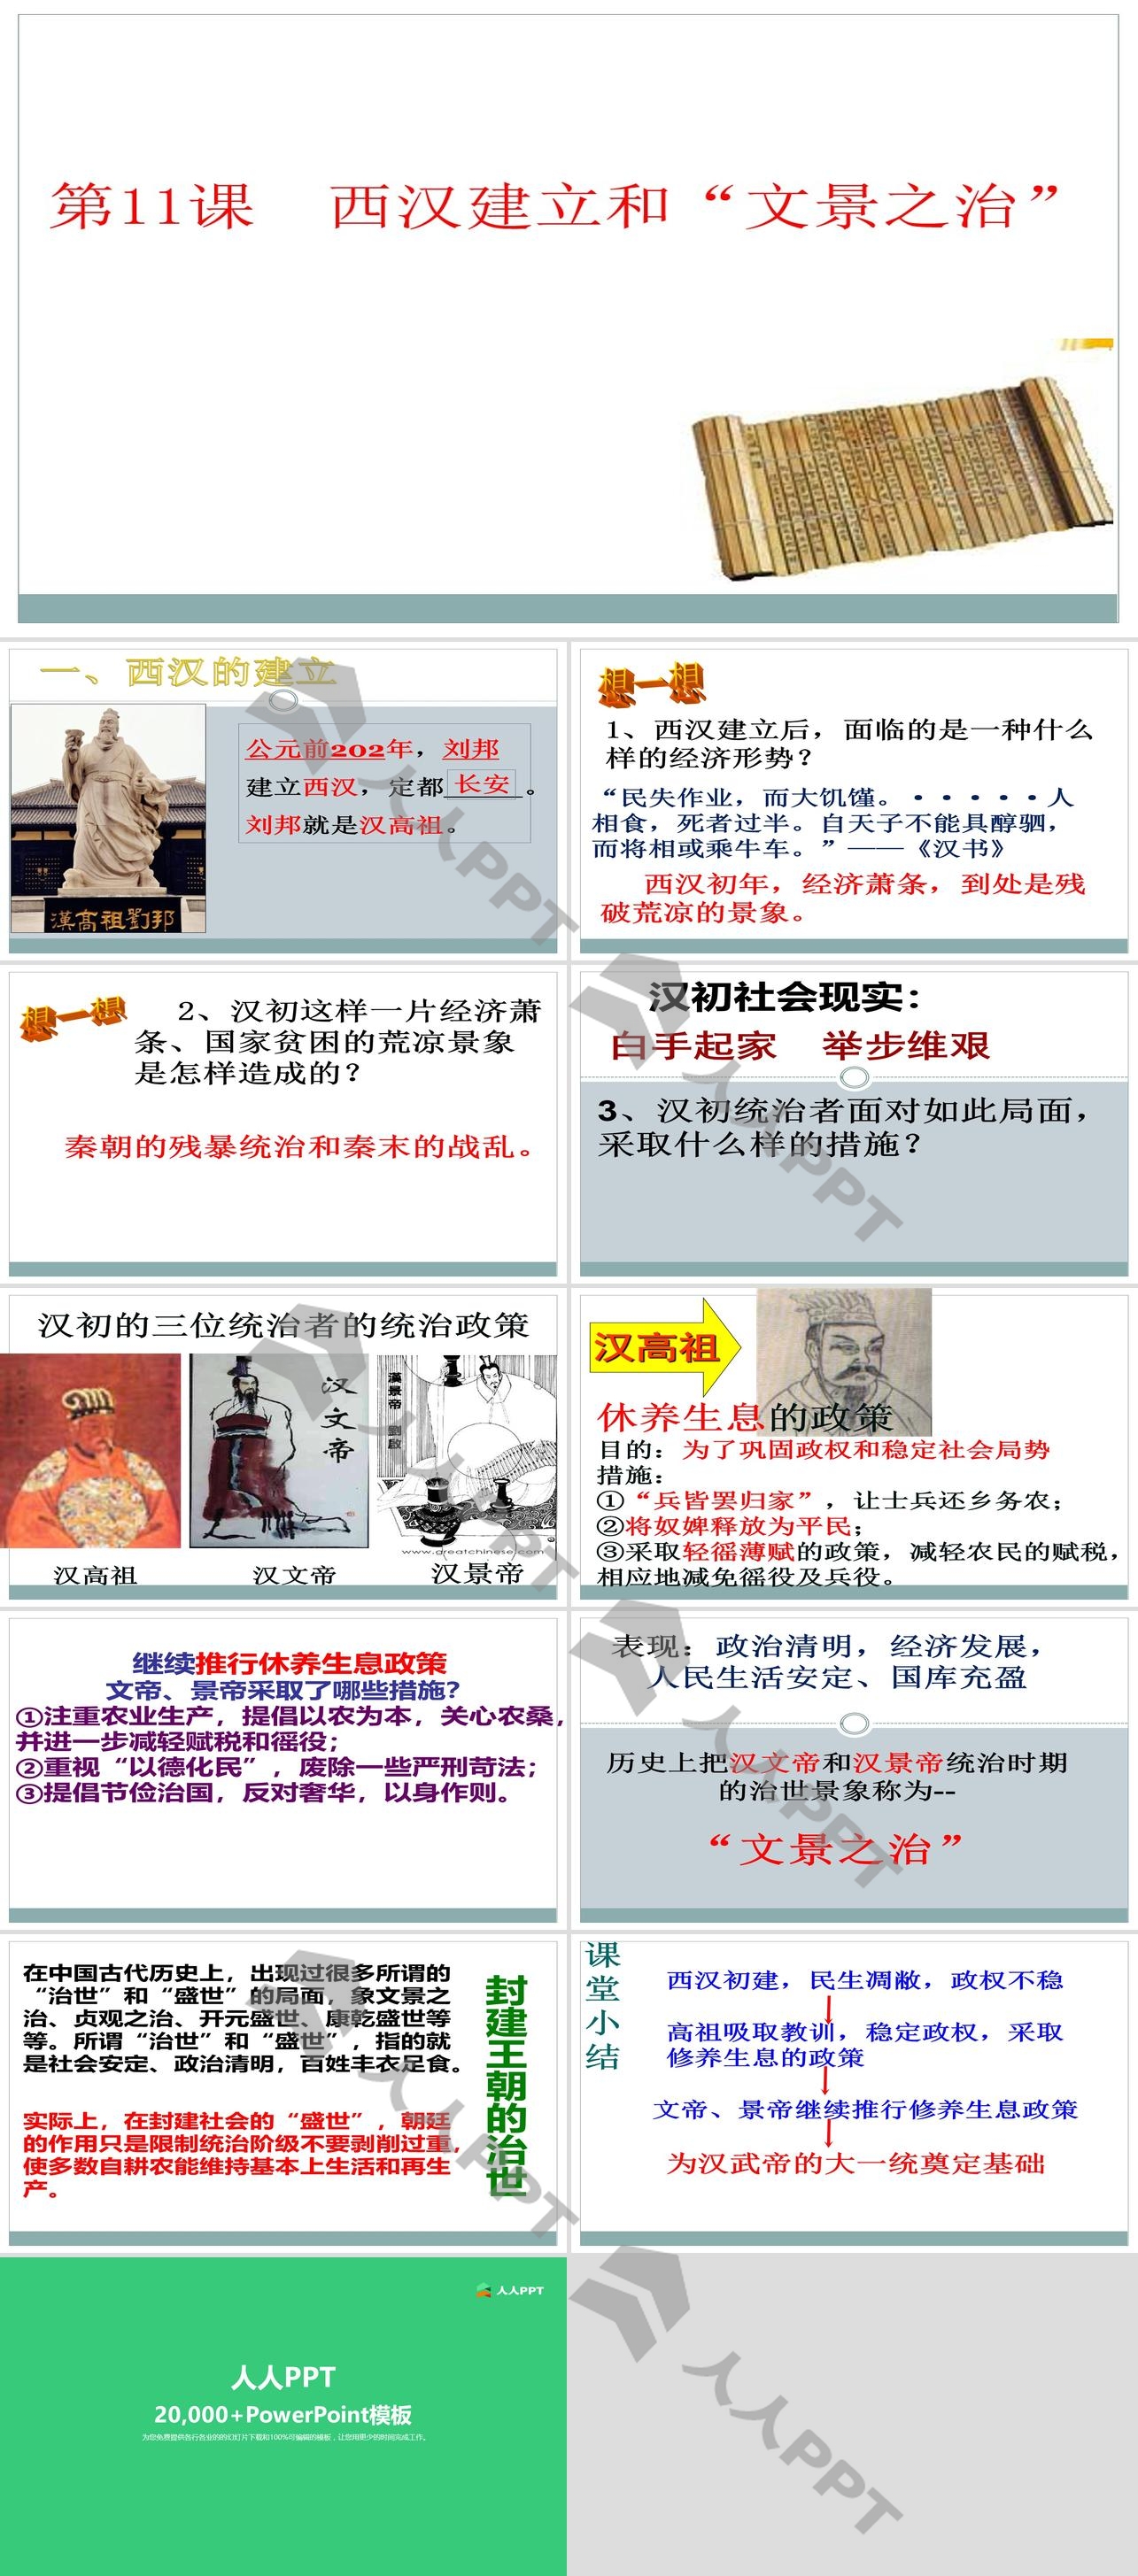 《西汉建立和“文景之治”》PPT下载长图